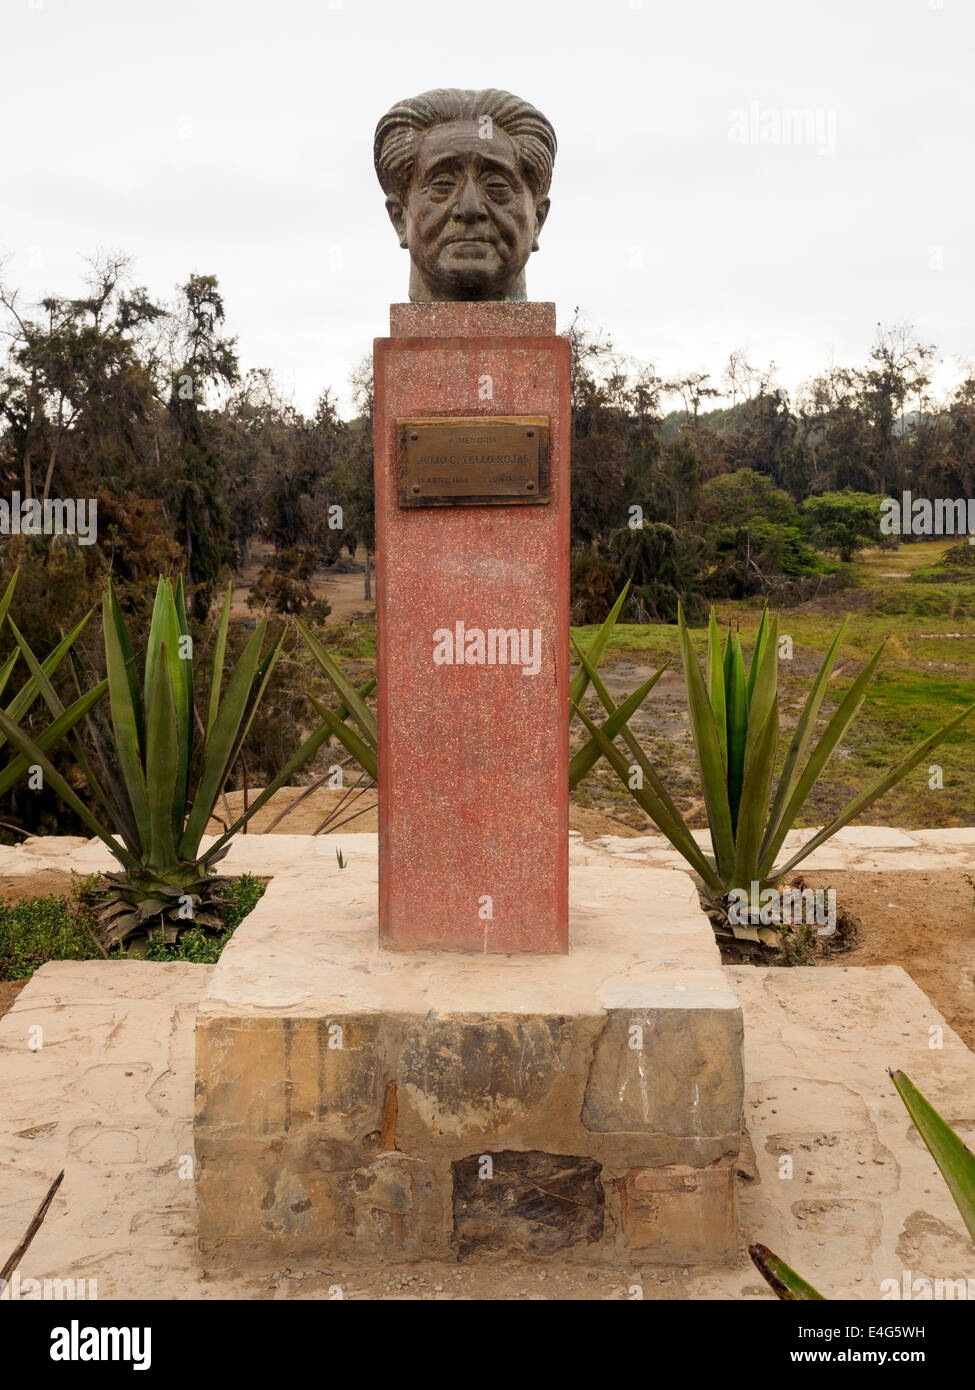 Busto de Julio C. Tello Rojas, padre de la arqueología peruana, en el sitio arqueológico de Pachacamac - Lima, Perú Foto de stock